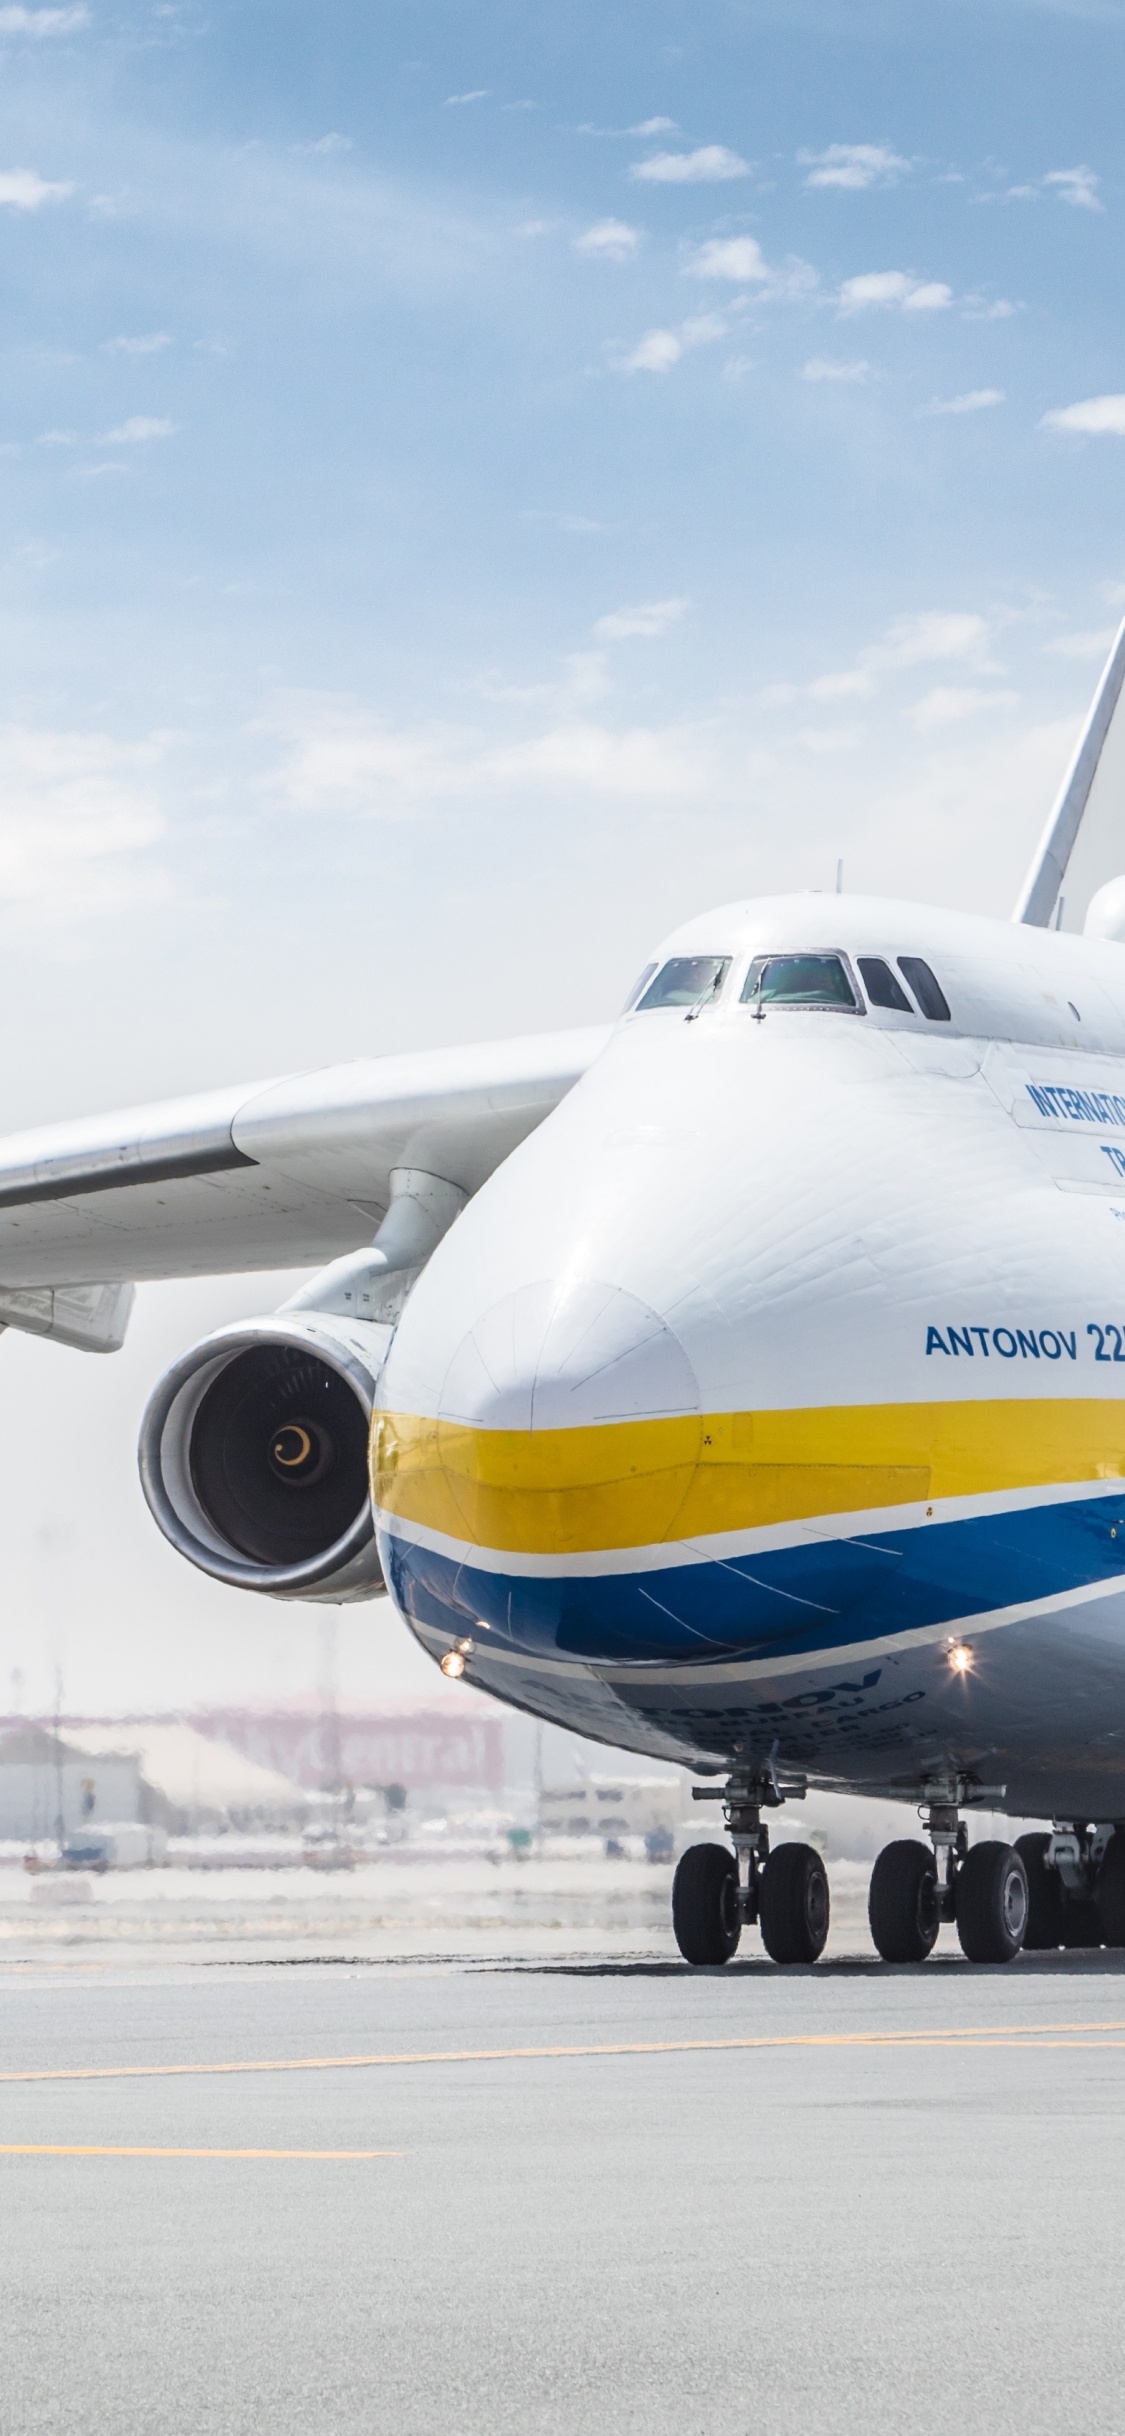 飞机上的货物, 客机, 安东诺夫, 航空航天工程, 航空公司 壁纸 1125x2436 允许